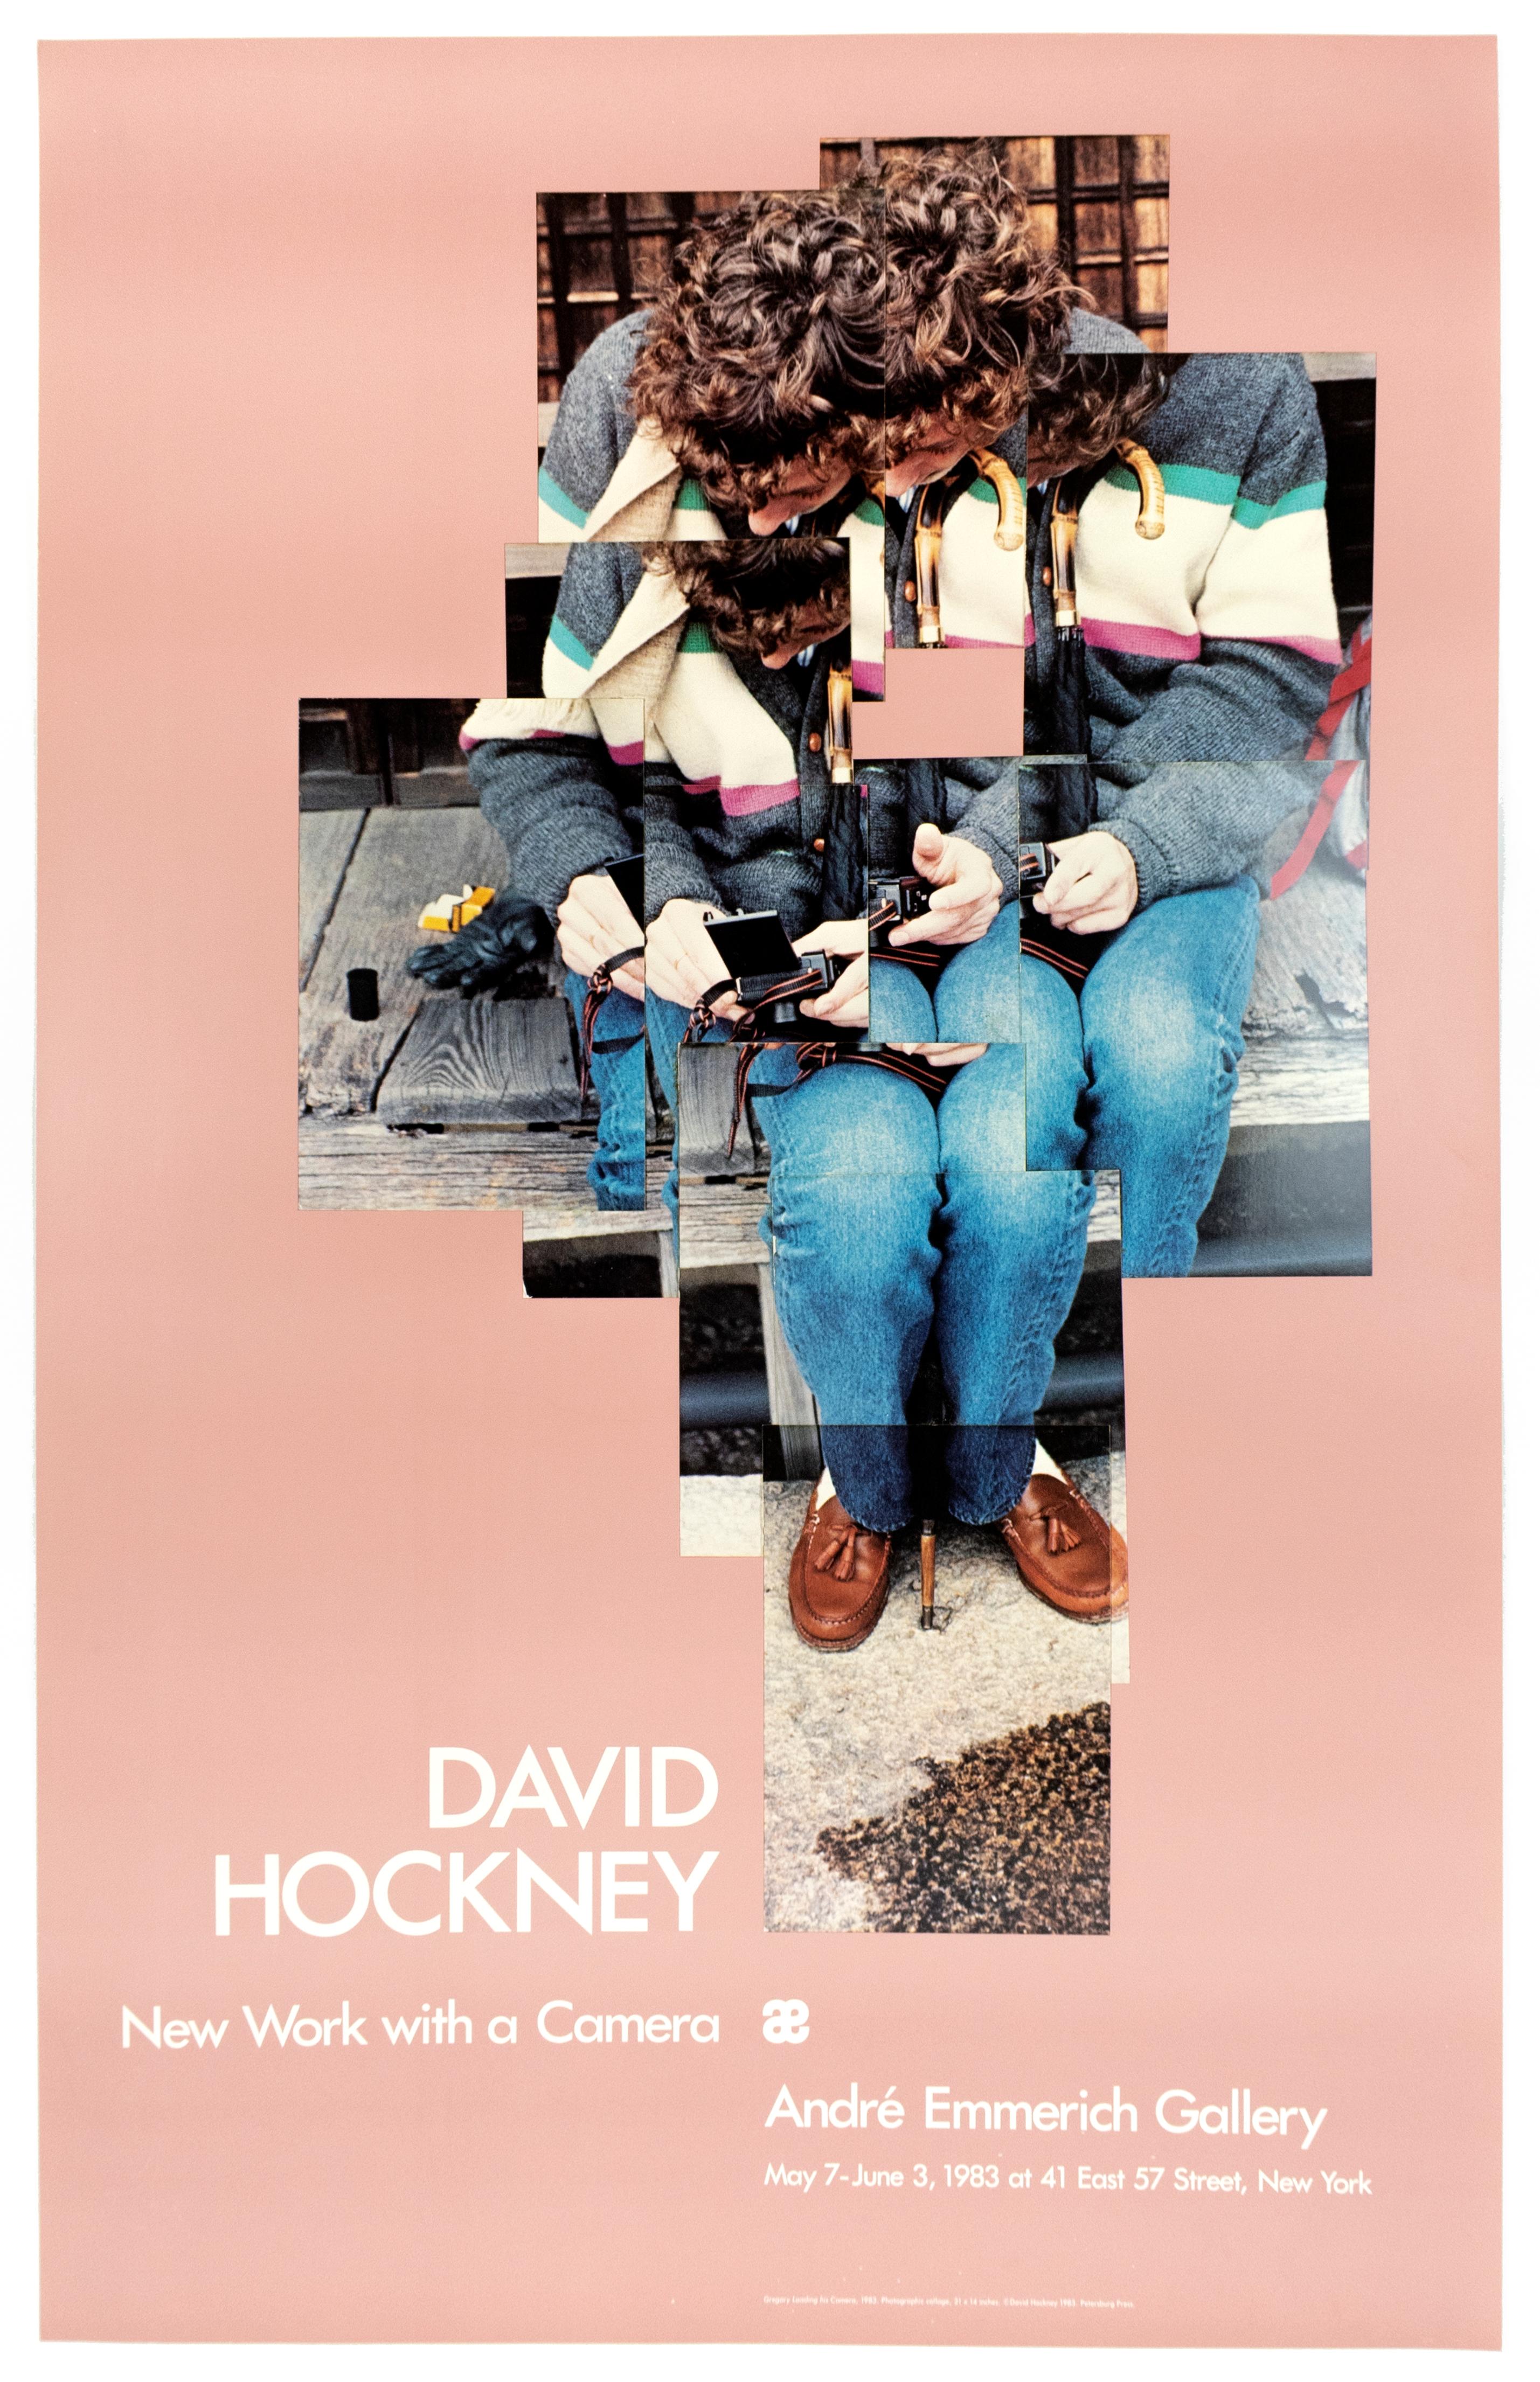 (after) David Hockney Portrait Print - Vintage Hockney Poster Gregory Loading His Camera 1983 vintage millennial pink